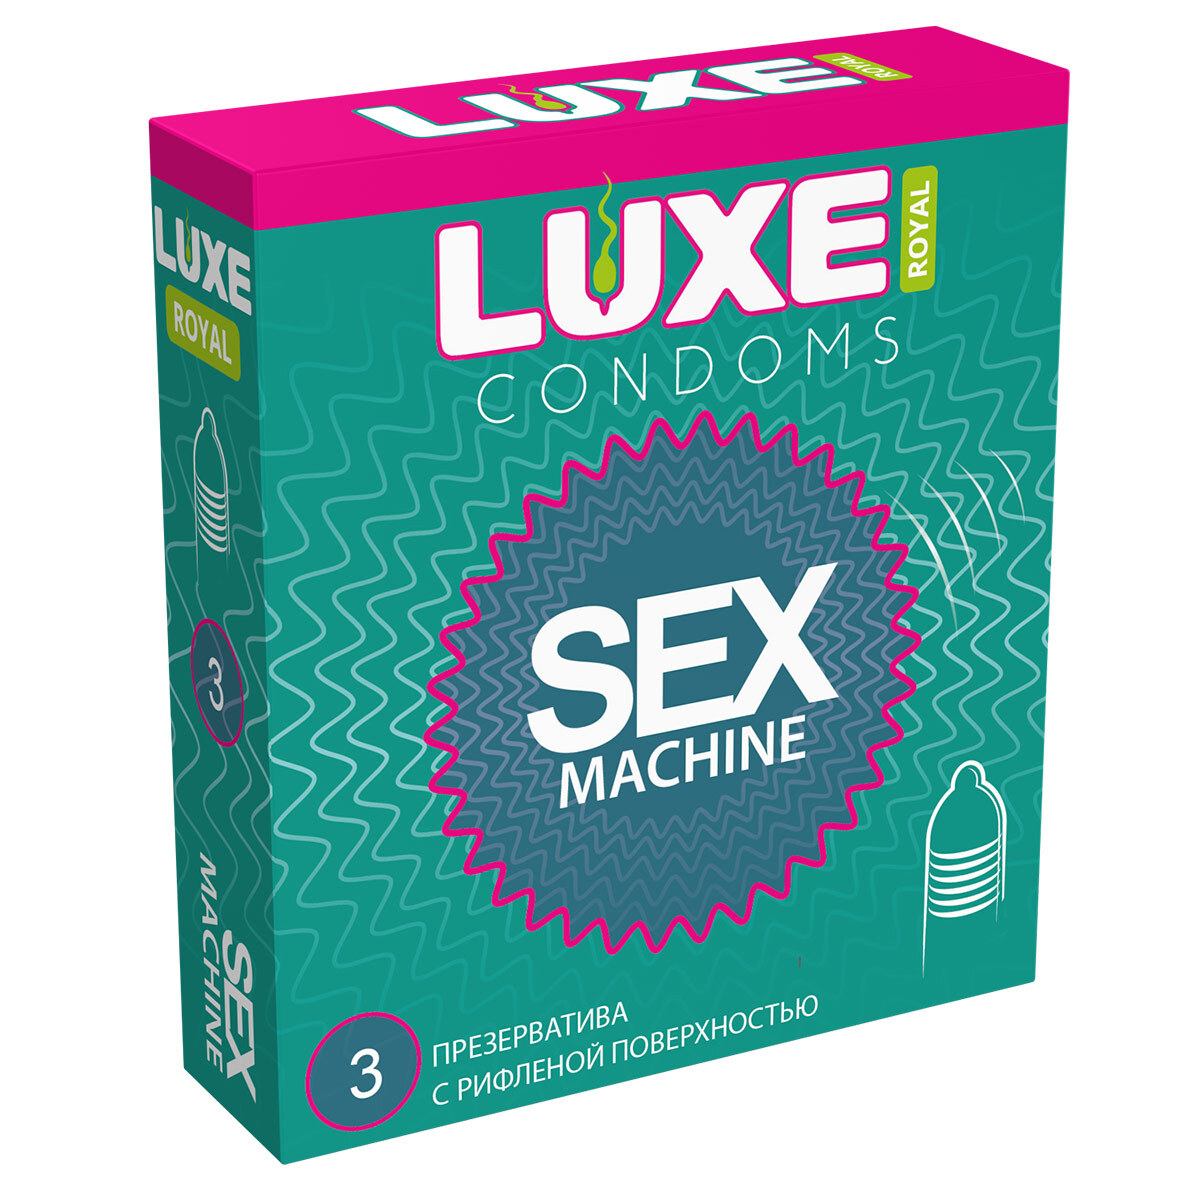 Ребристые презервативы LUXE Royal SEX MACHINE,  3 шт